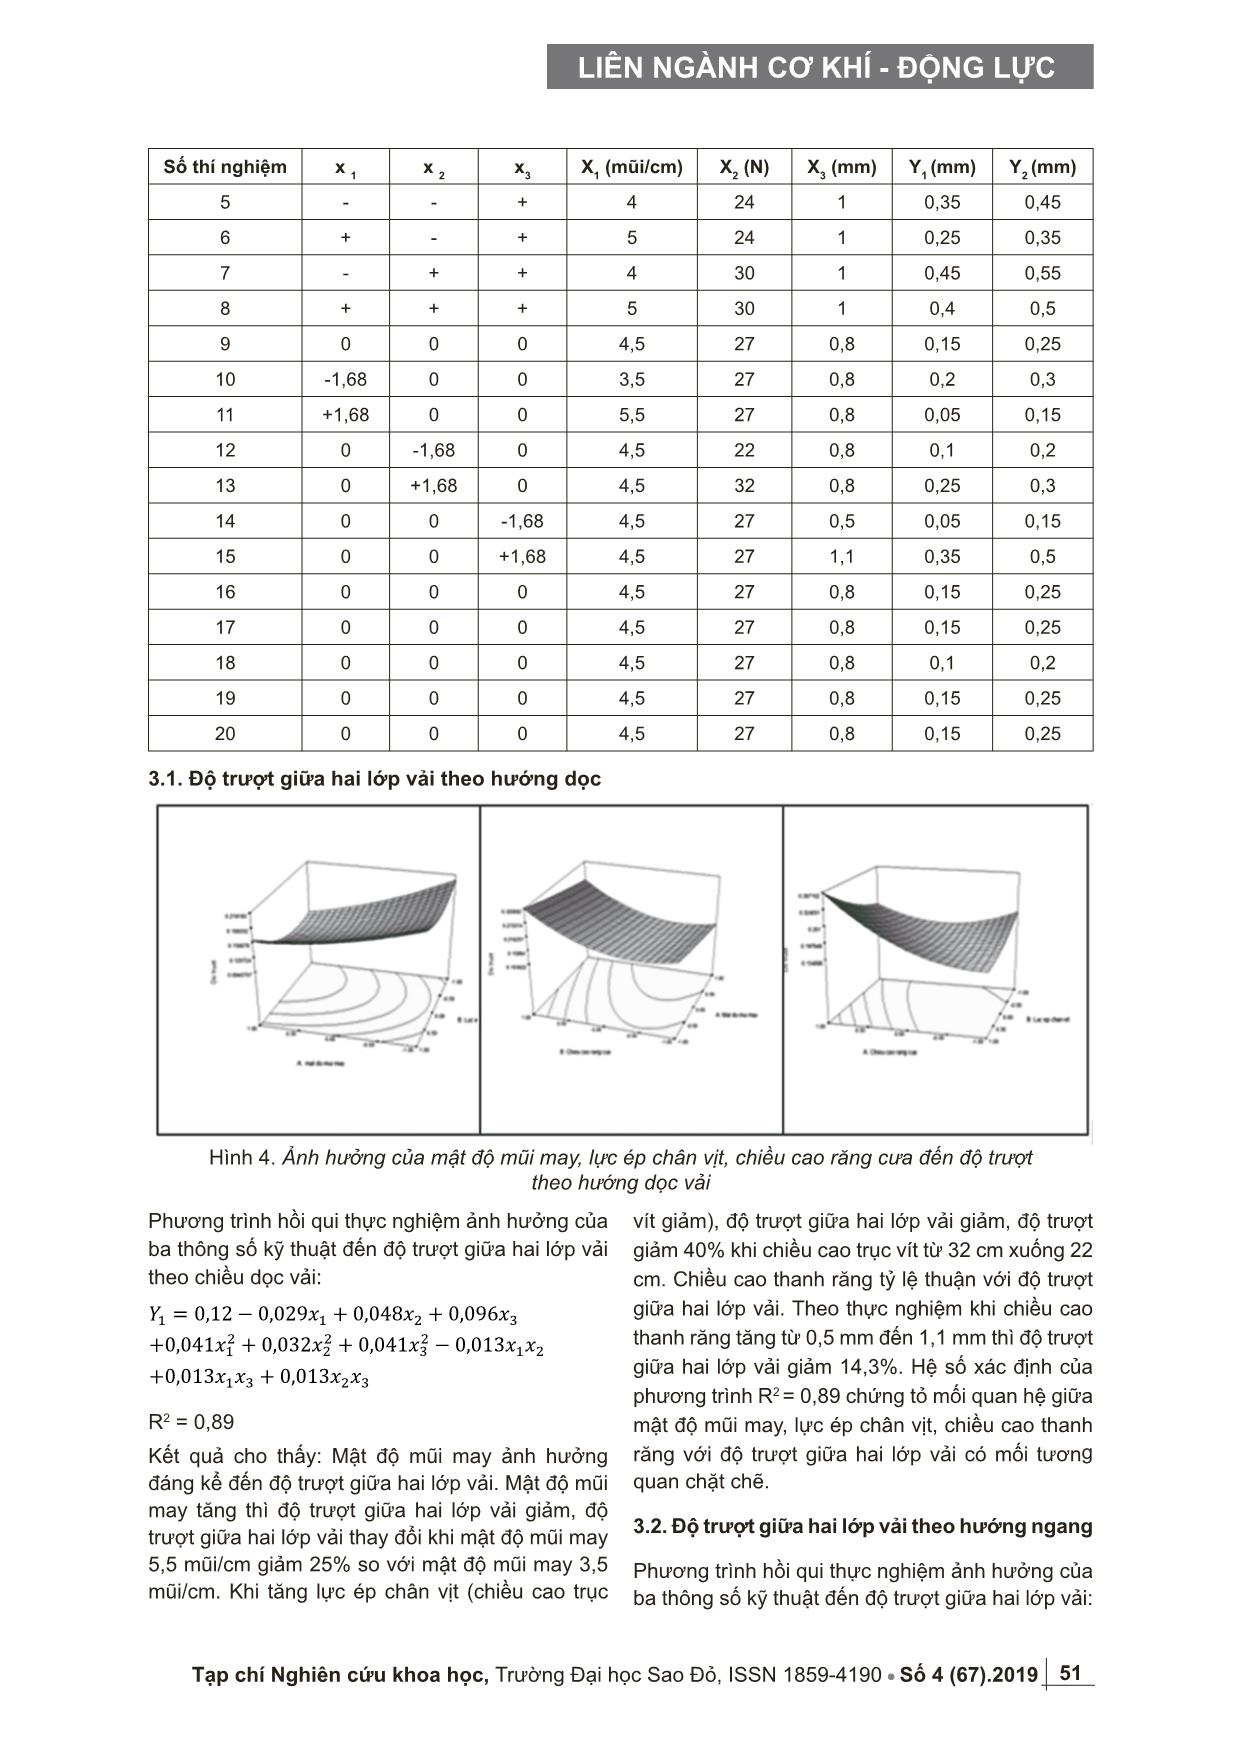 Nghiên cứu ảnh hưởng của thông số công nghệ may tới độ trượt giữa hai lớp vải polyester trang 4